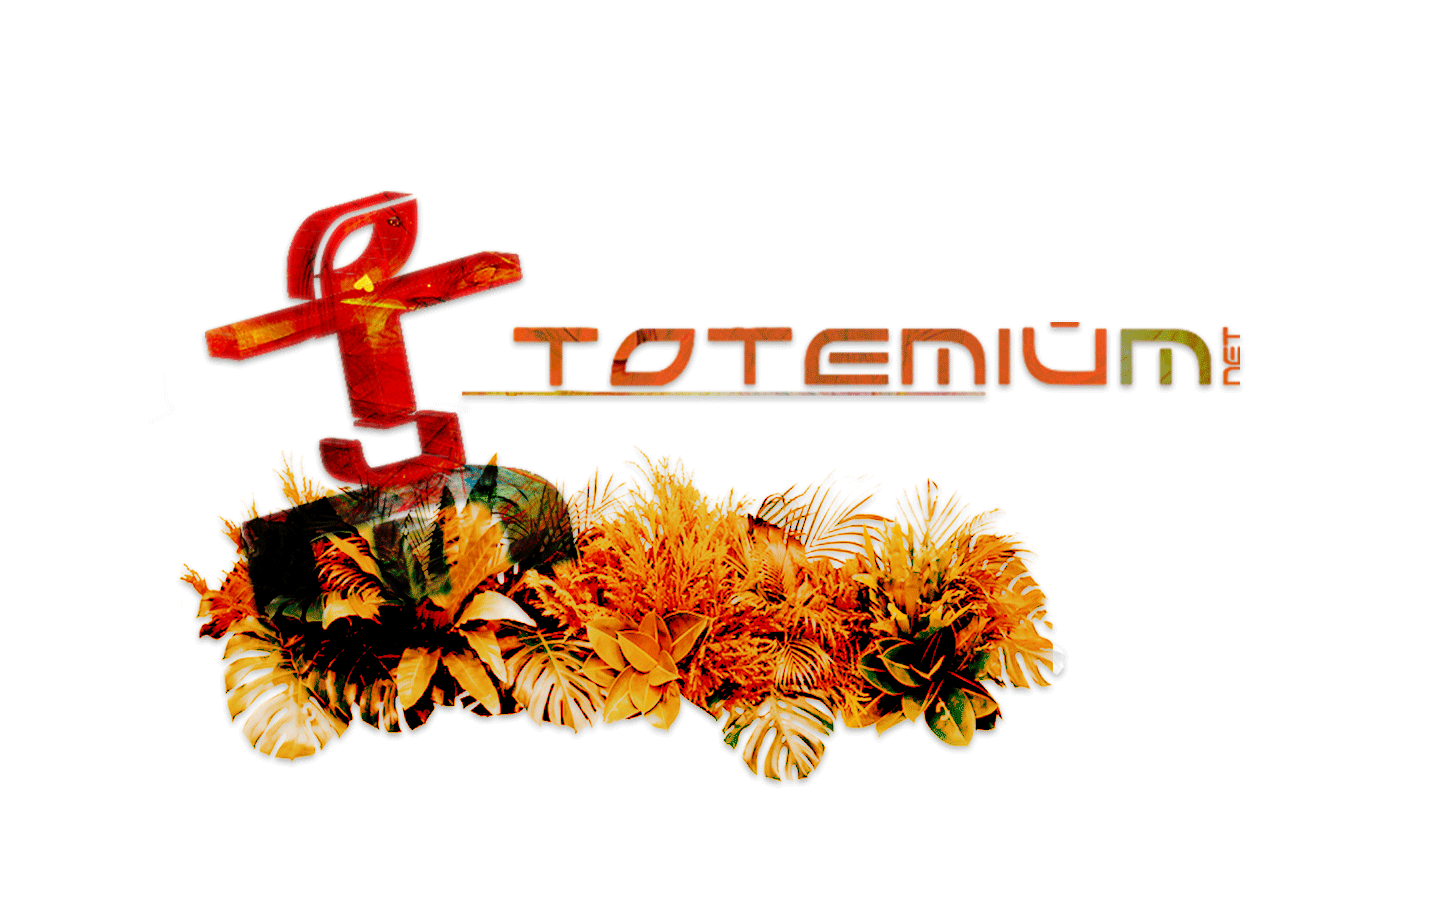 Bienvenue chez Totemium.net